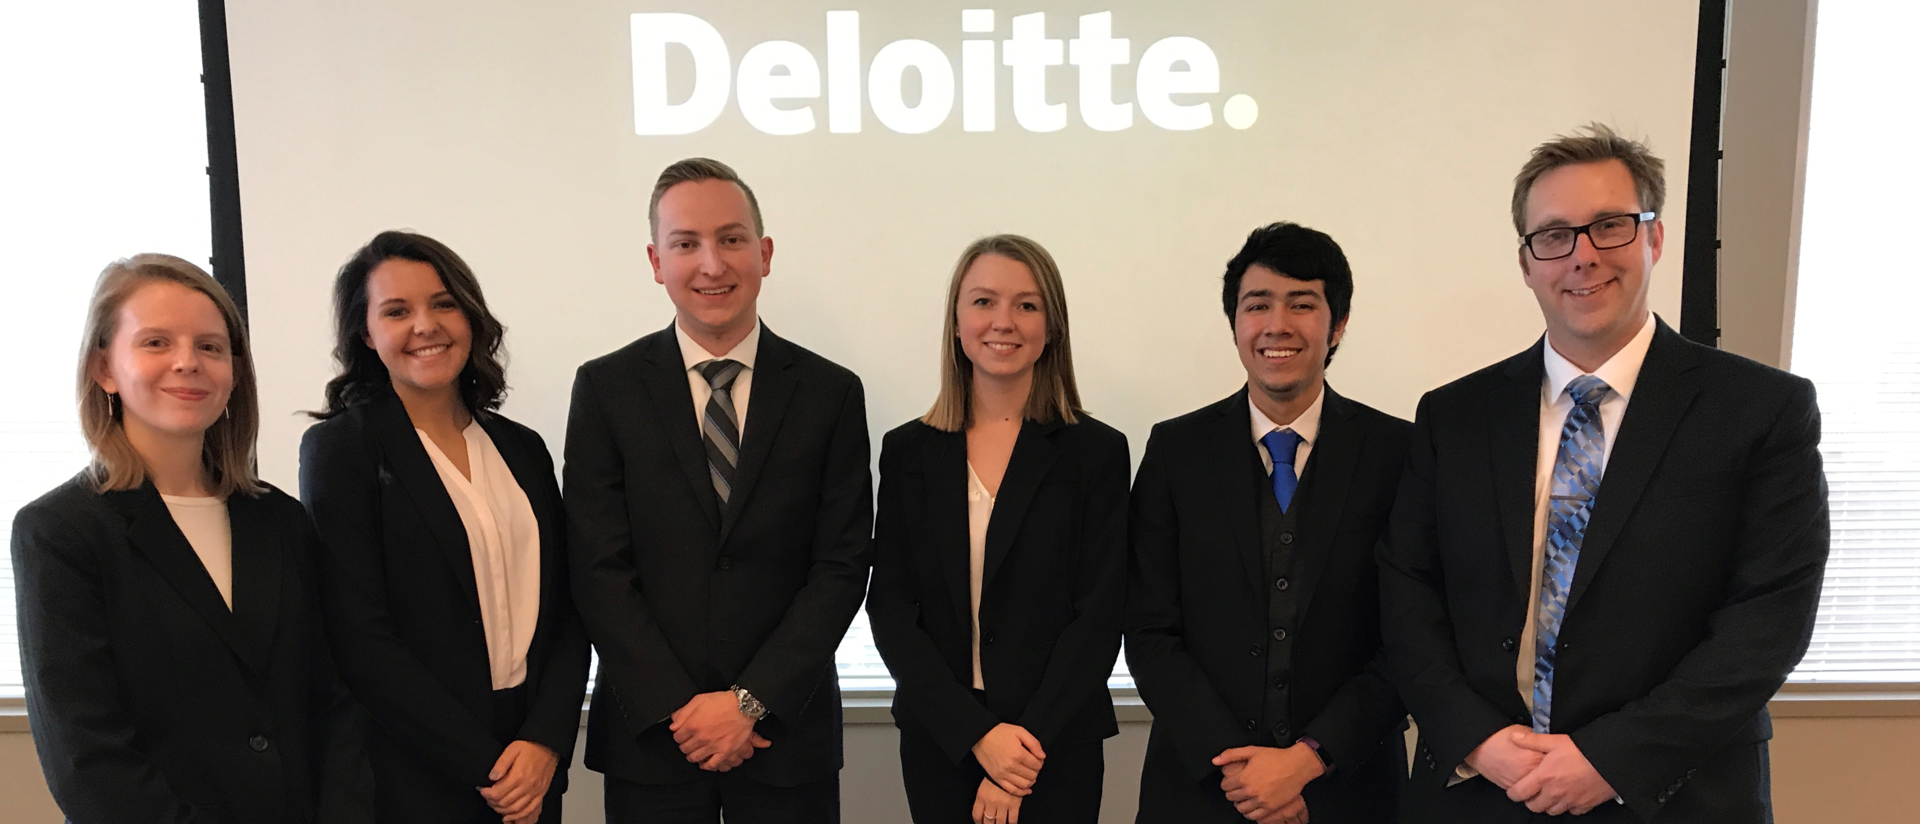 2017 Deloitte case competition winners